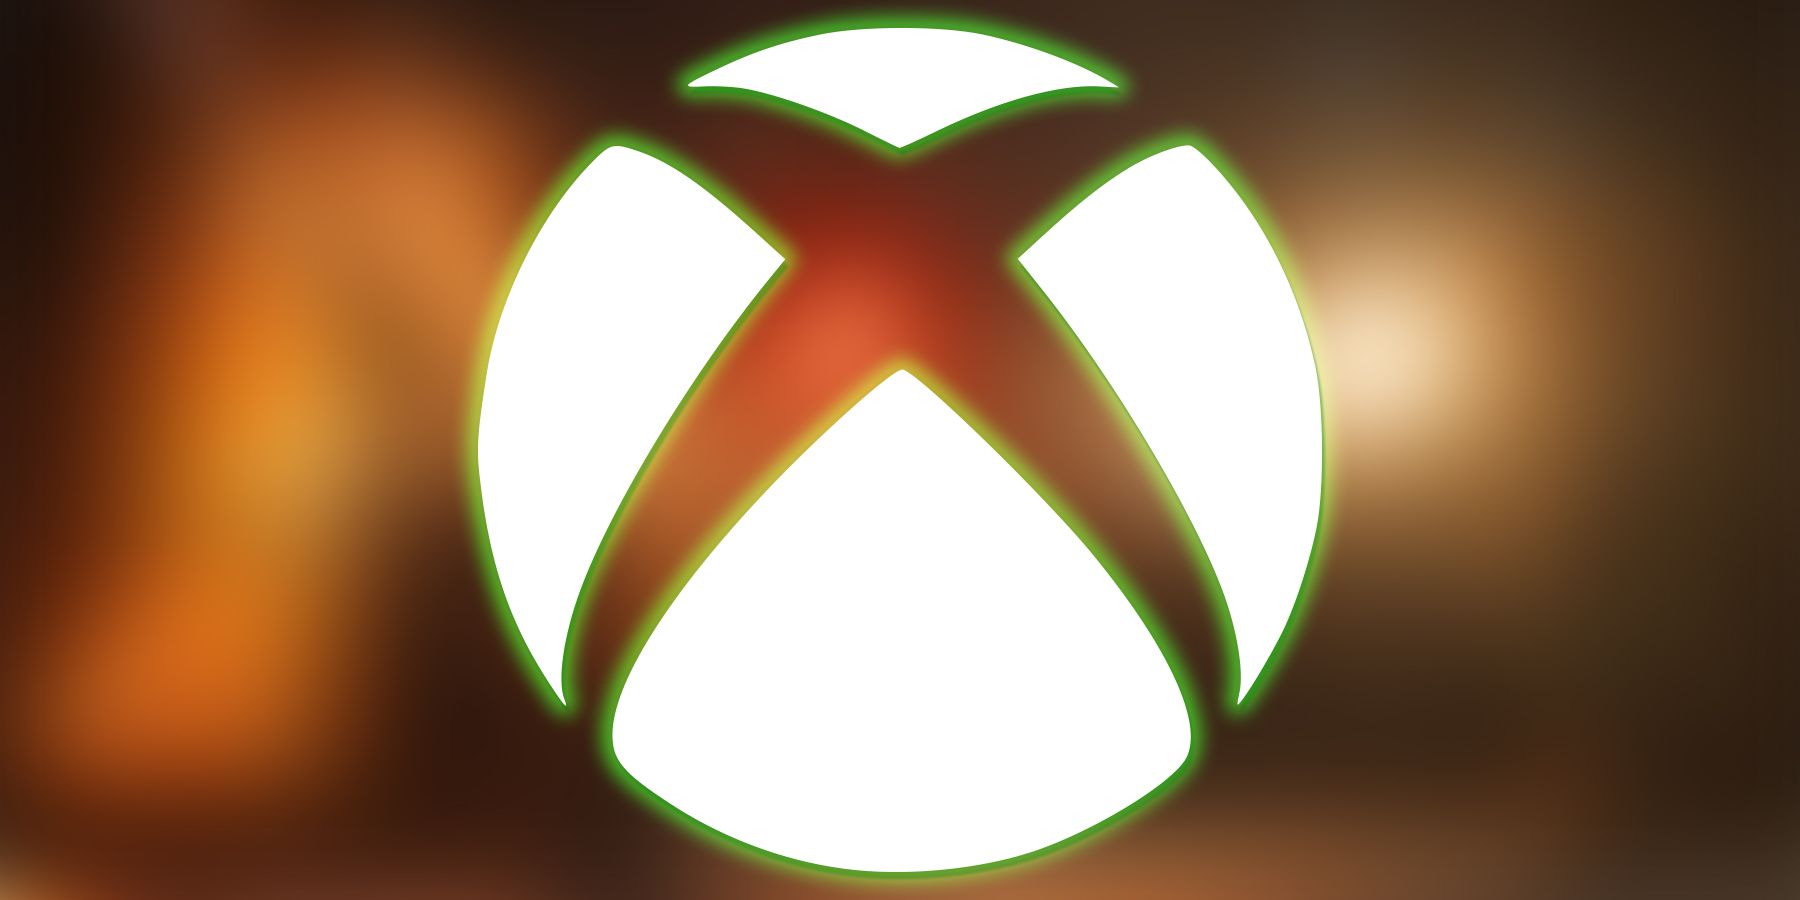 Sous-marque du logo Xbox blanc avec une lueur verte sur une capture d'écran floue de la promotion Steam de Final Fantasy 7 Remake